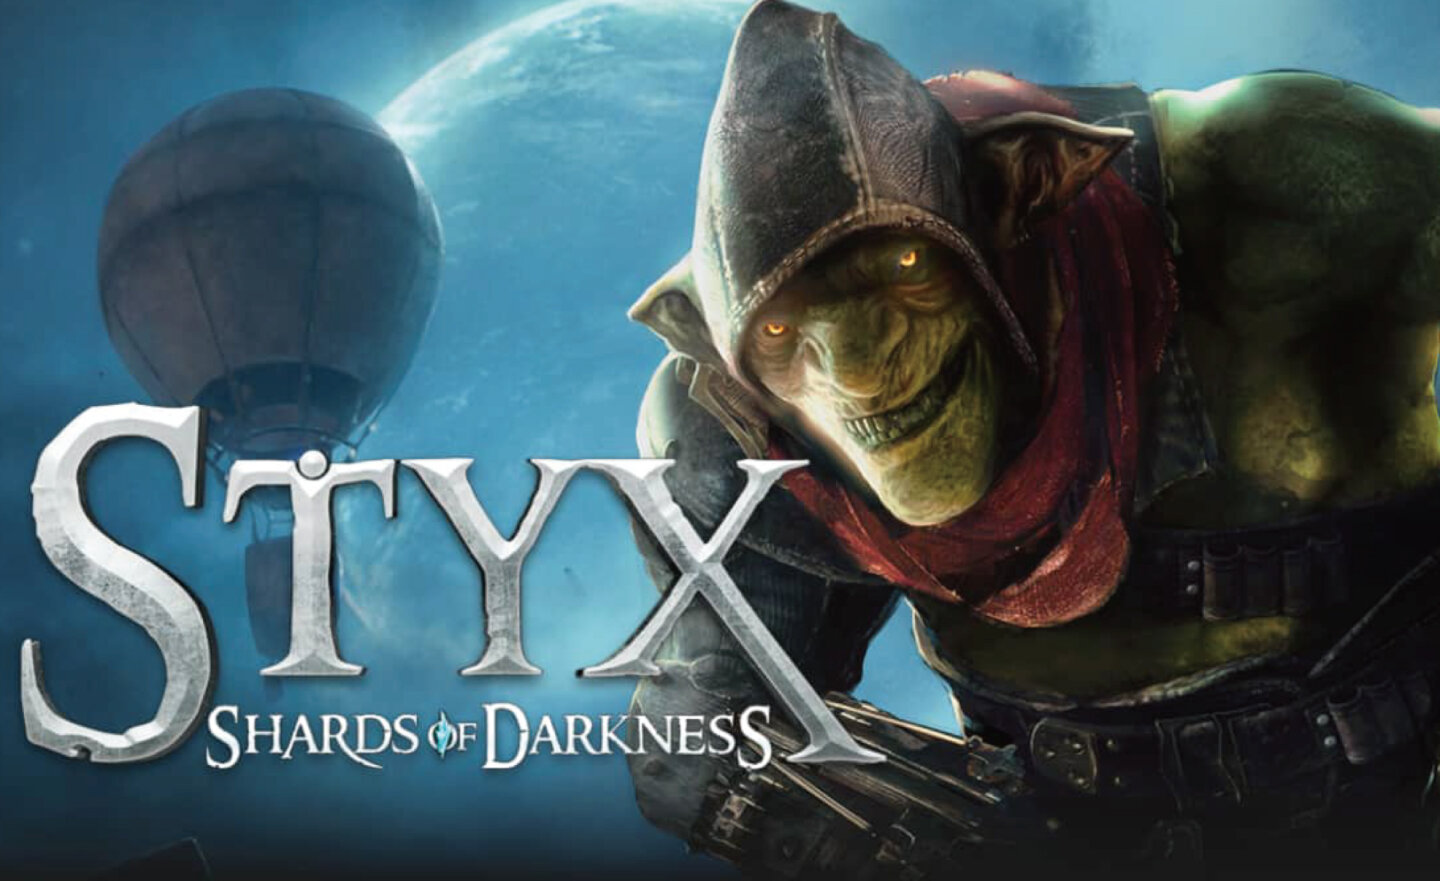 【限時免費】極度好評的潛行動作遊戲《Styx: Shards of Darkness》放送中，直到 11 月 24 日晚上 22:00 截止